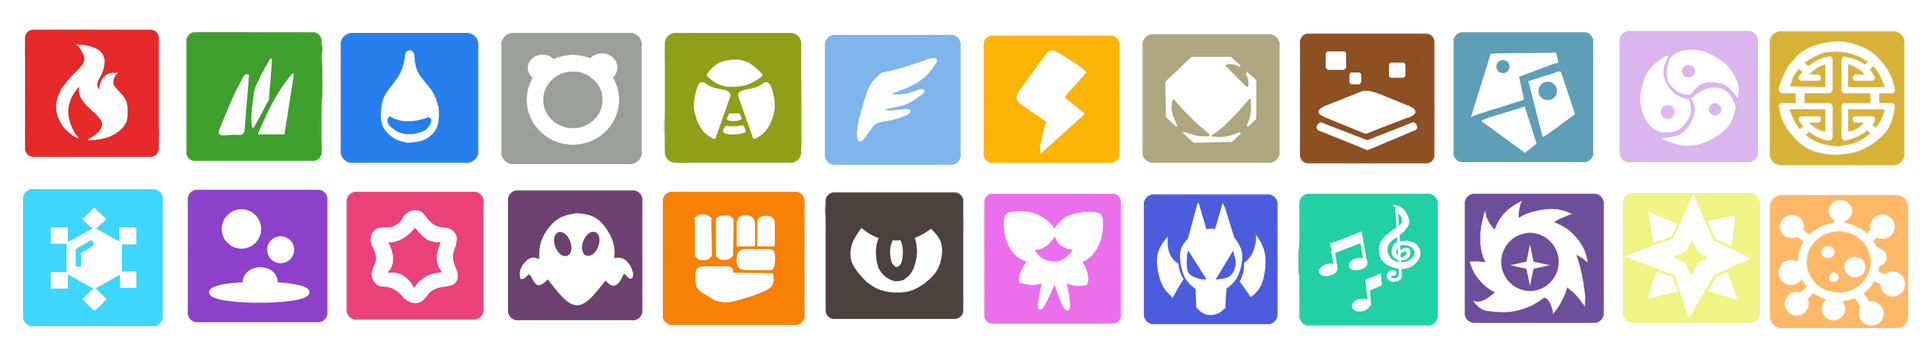 Pokemon Type Symbols by Soluna17 on DeviantArt